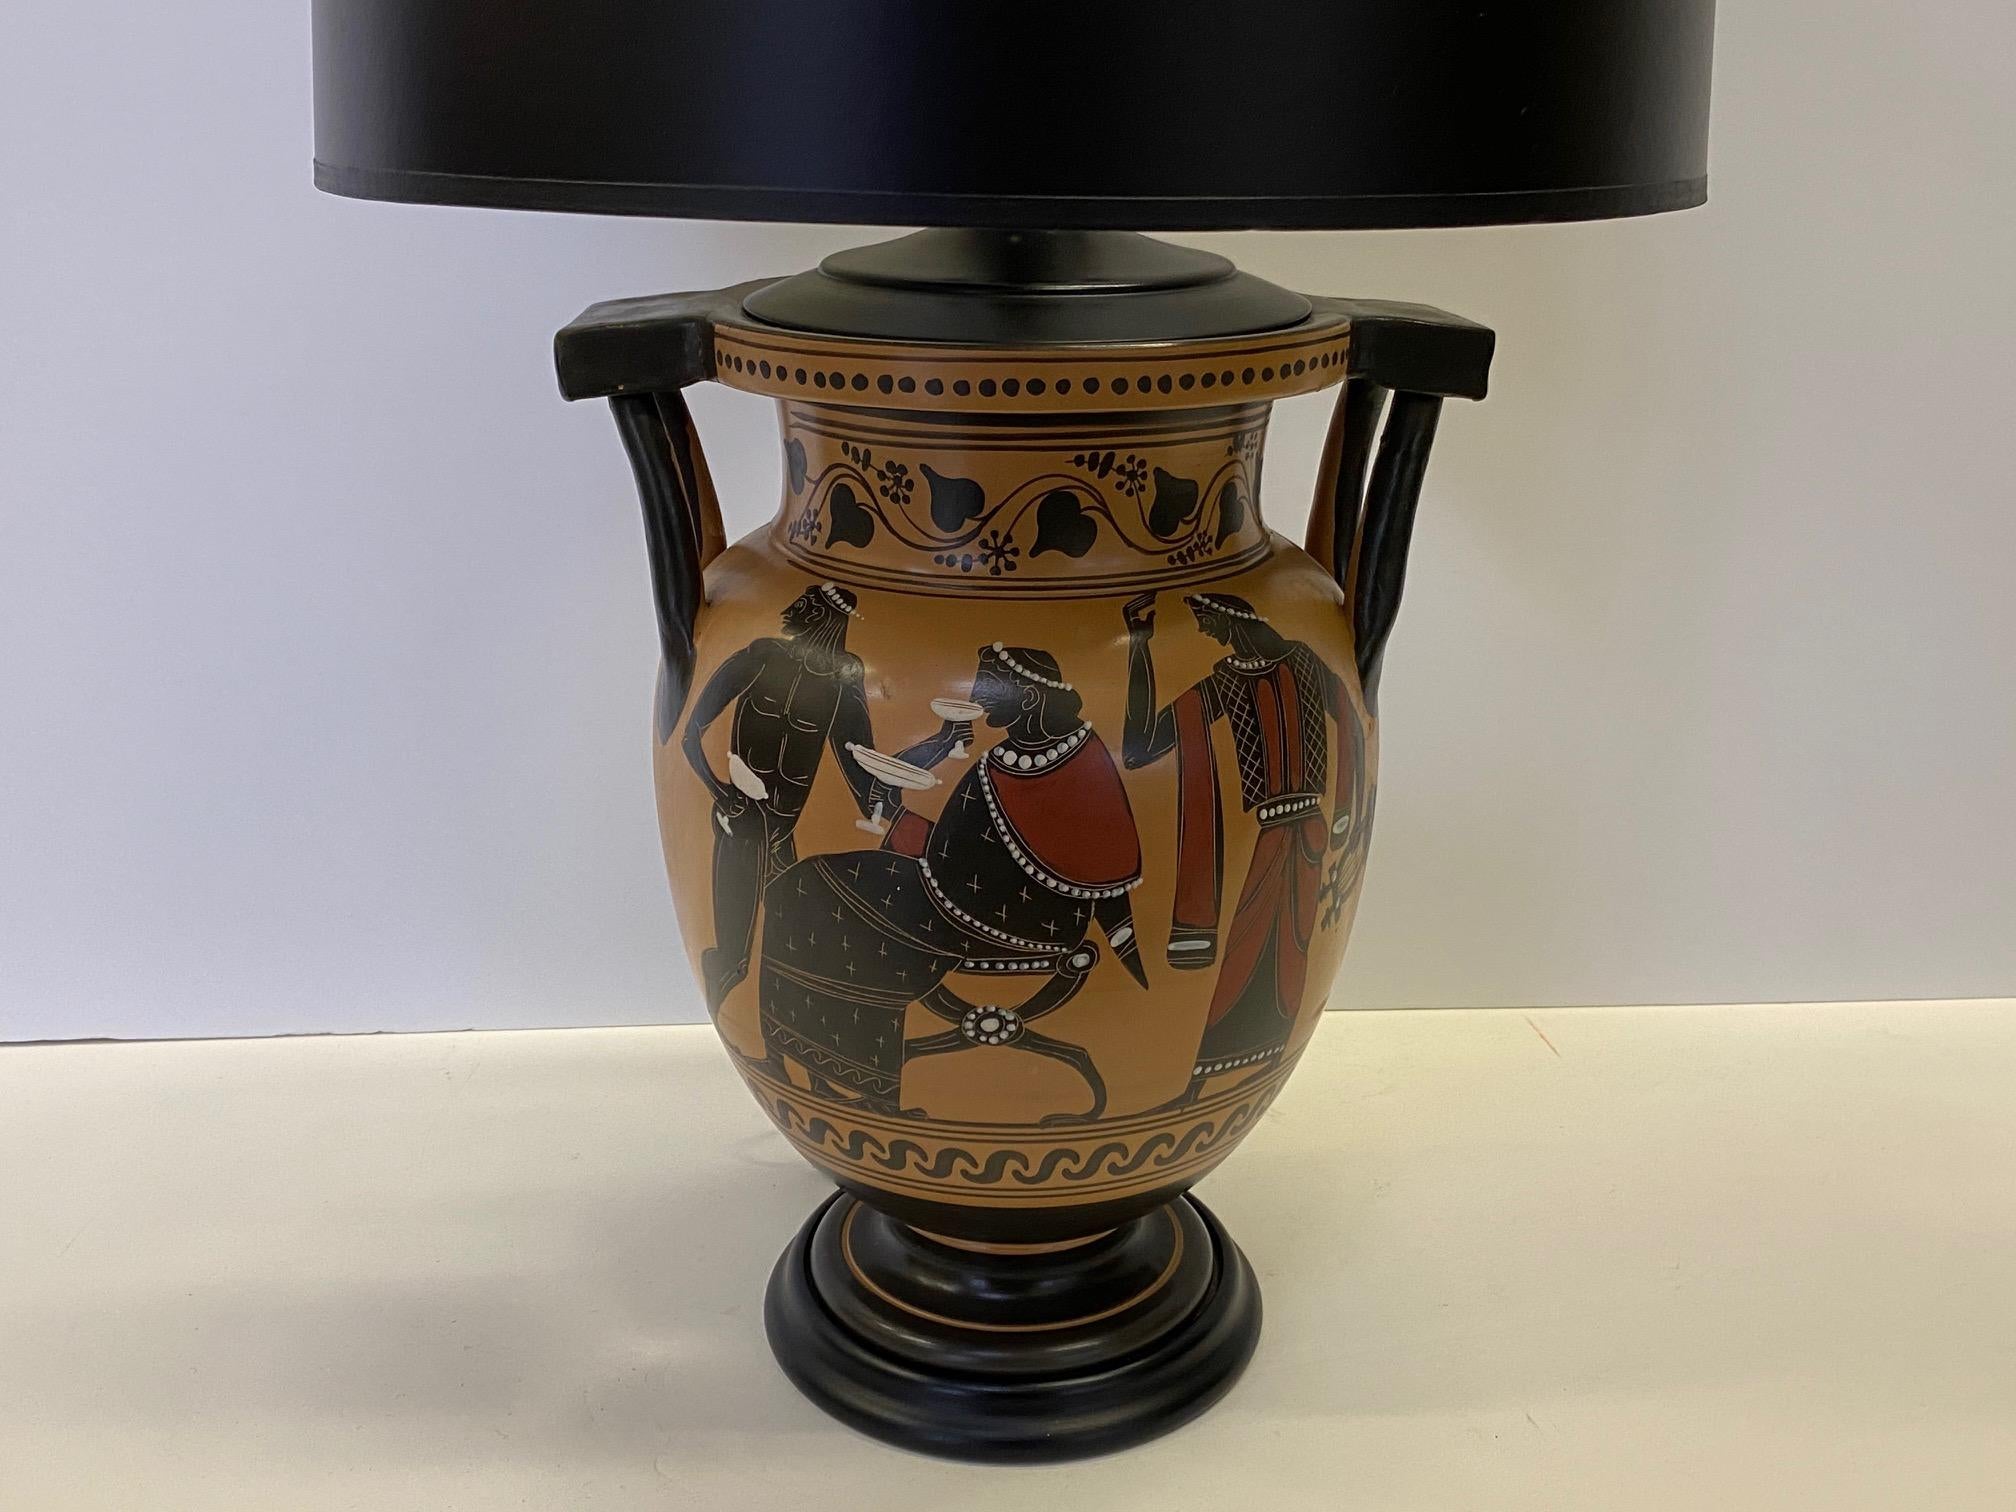 Eine wunderschöne Vase im klassischen griechischen Stil mit handgemaltem, warmem Goldhintergrund und antiken Figuren aus schwarzem und rotem Oxid, die in eine auffällige Tischlampe mit schwarzem Schirm verwandelt wurde.